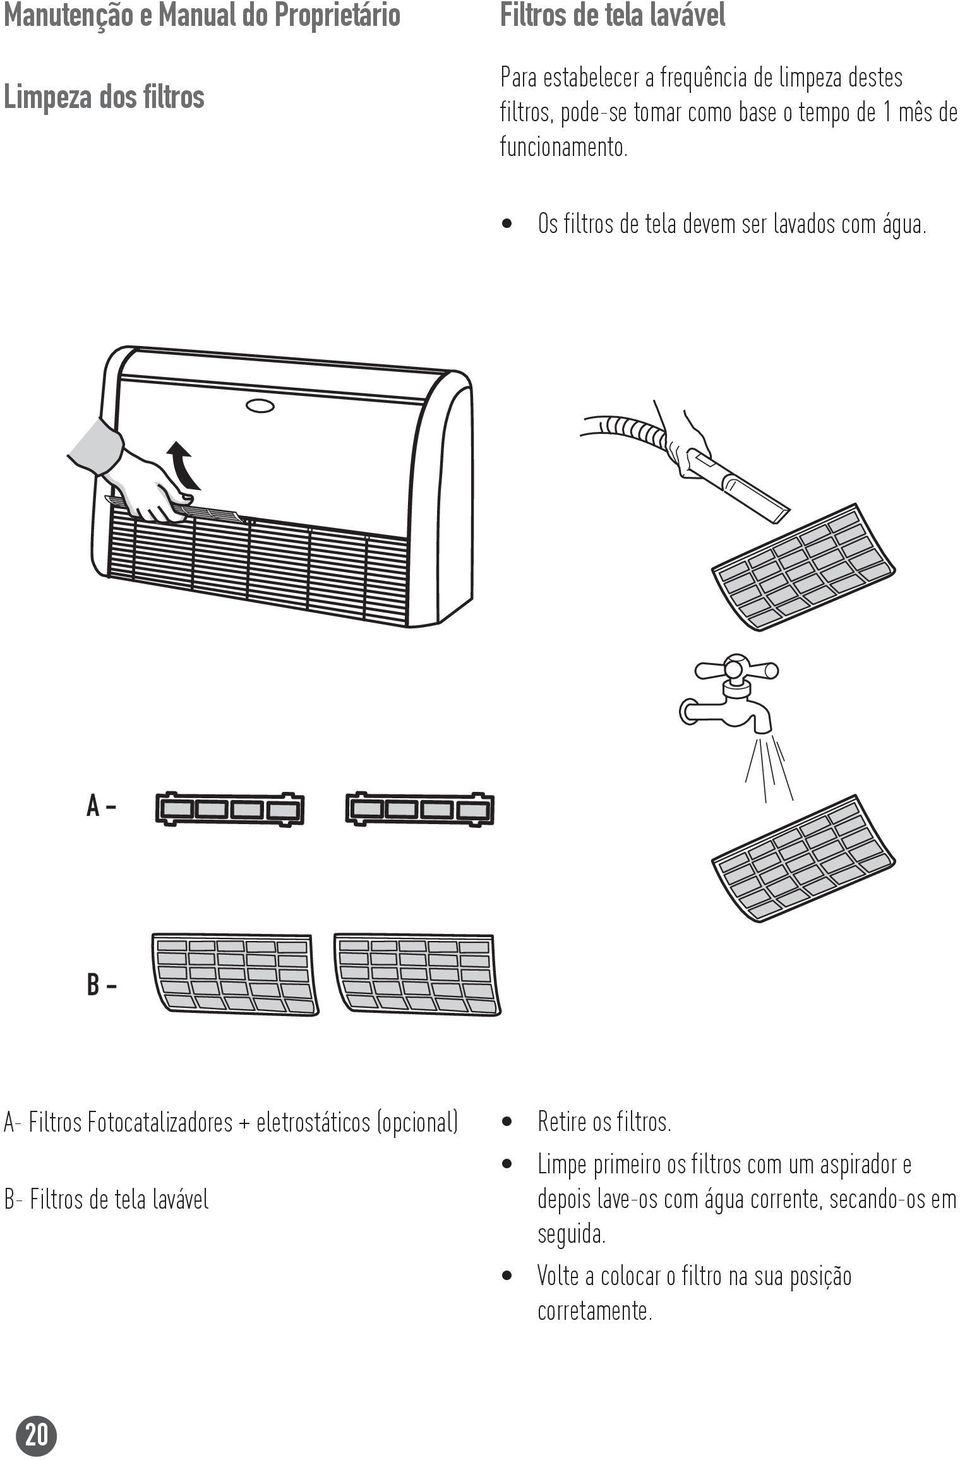 A - B - A- Filtros Fotocatalizadores + eletrostáticos (opcional) B- Filtros de tela lavável Retire os filtros.